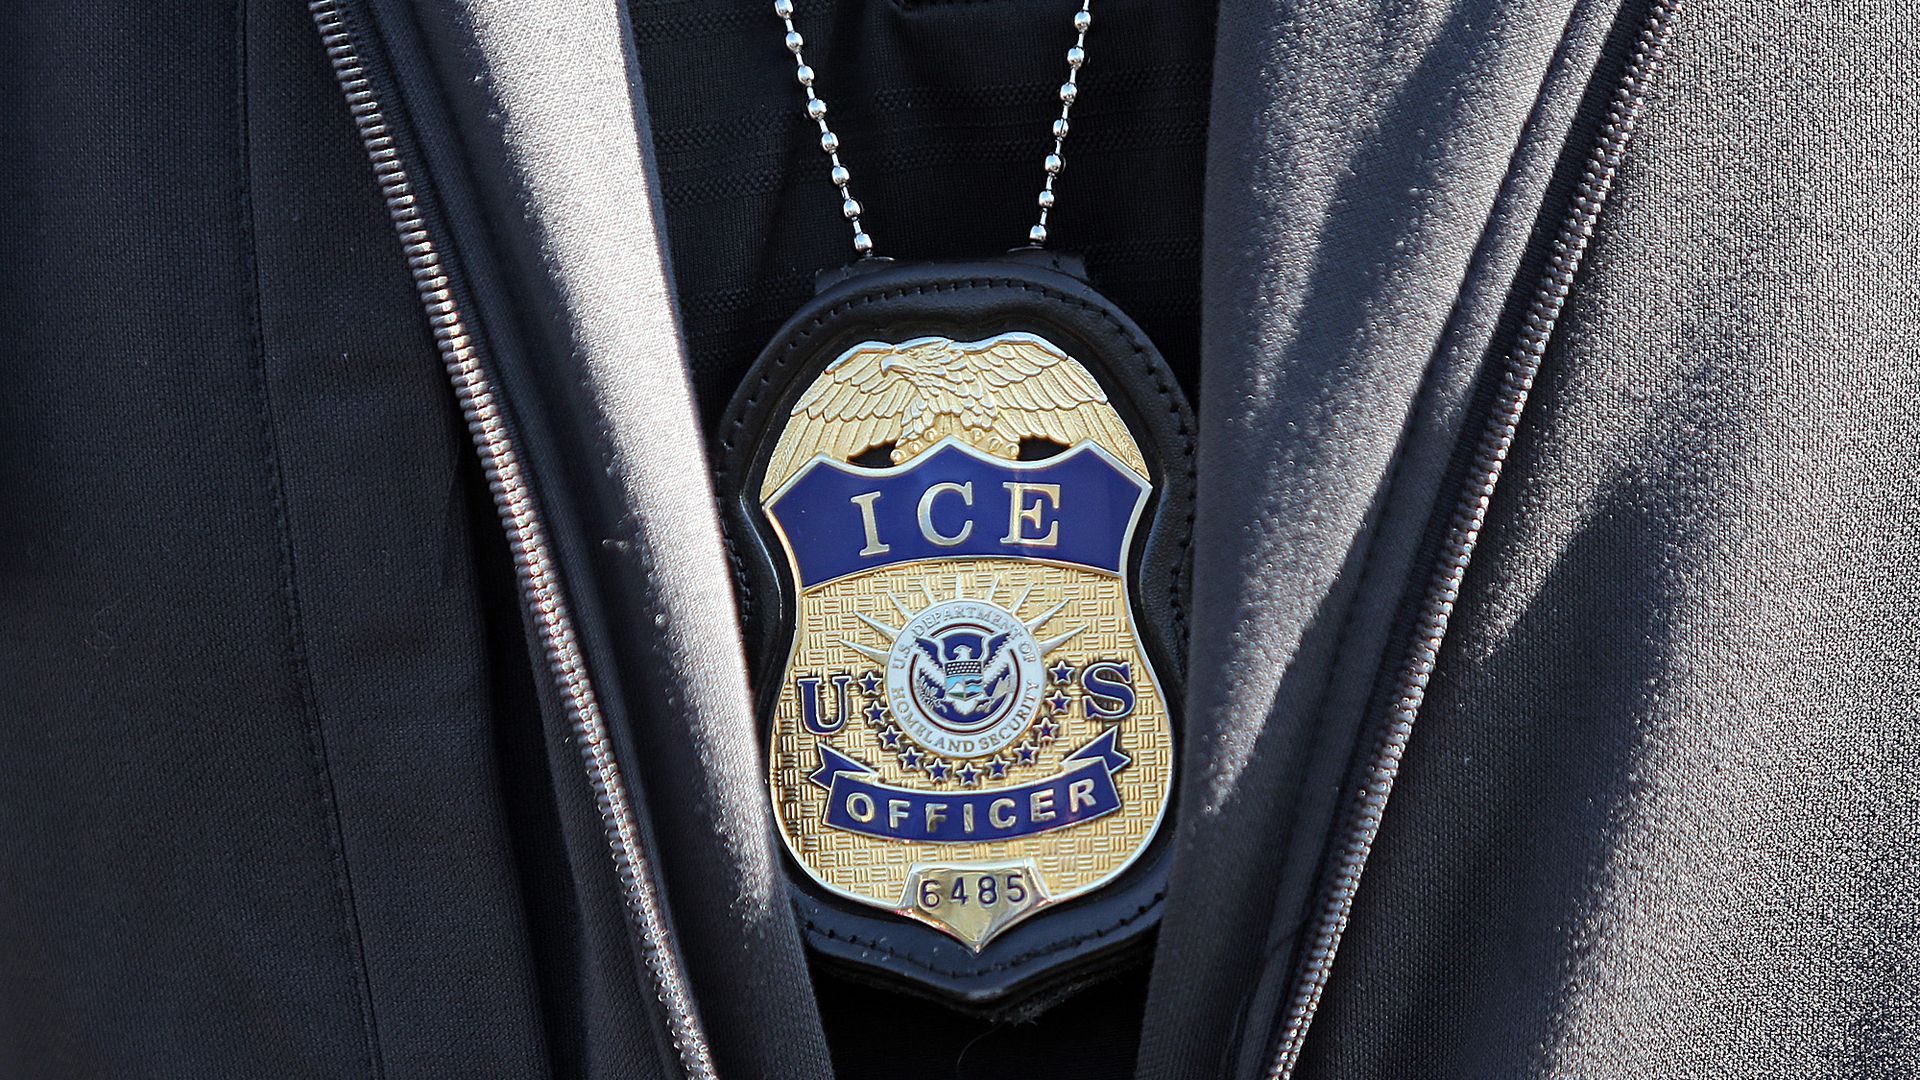 ICE agent badge on September 25, 2019 in Revere, Massachusetts.